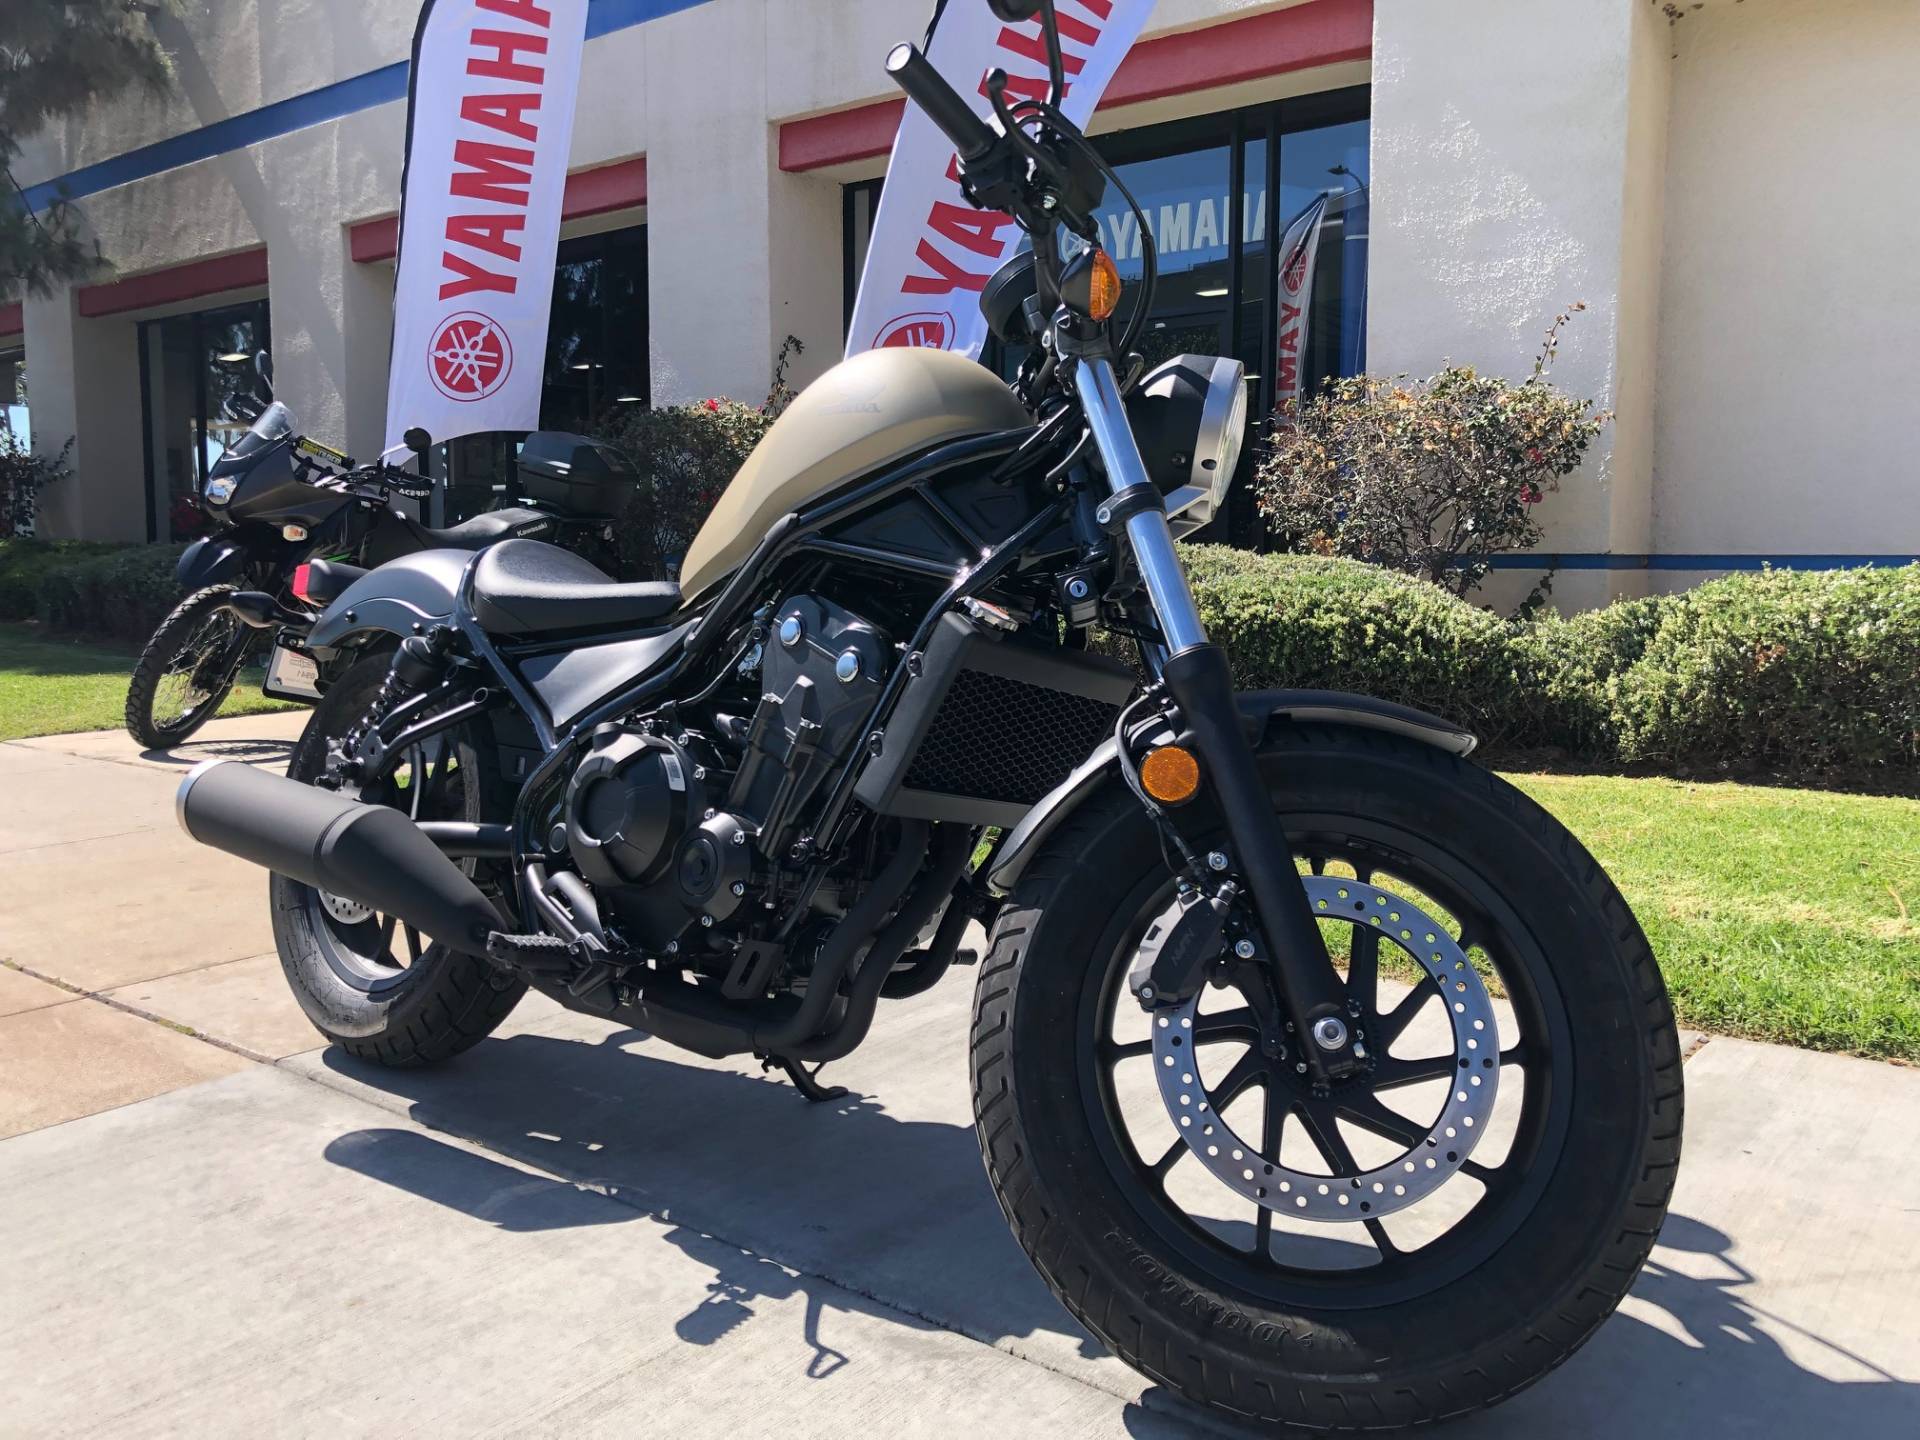 New 2019 Honda Rebel 500 ABS | Motorcycles in EL Cajon CA | N/A Matte ...